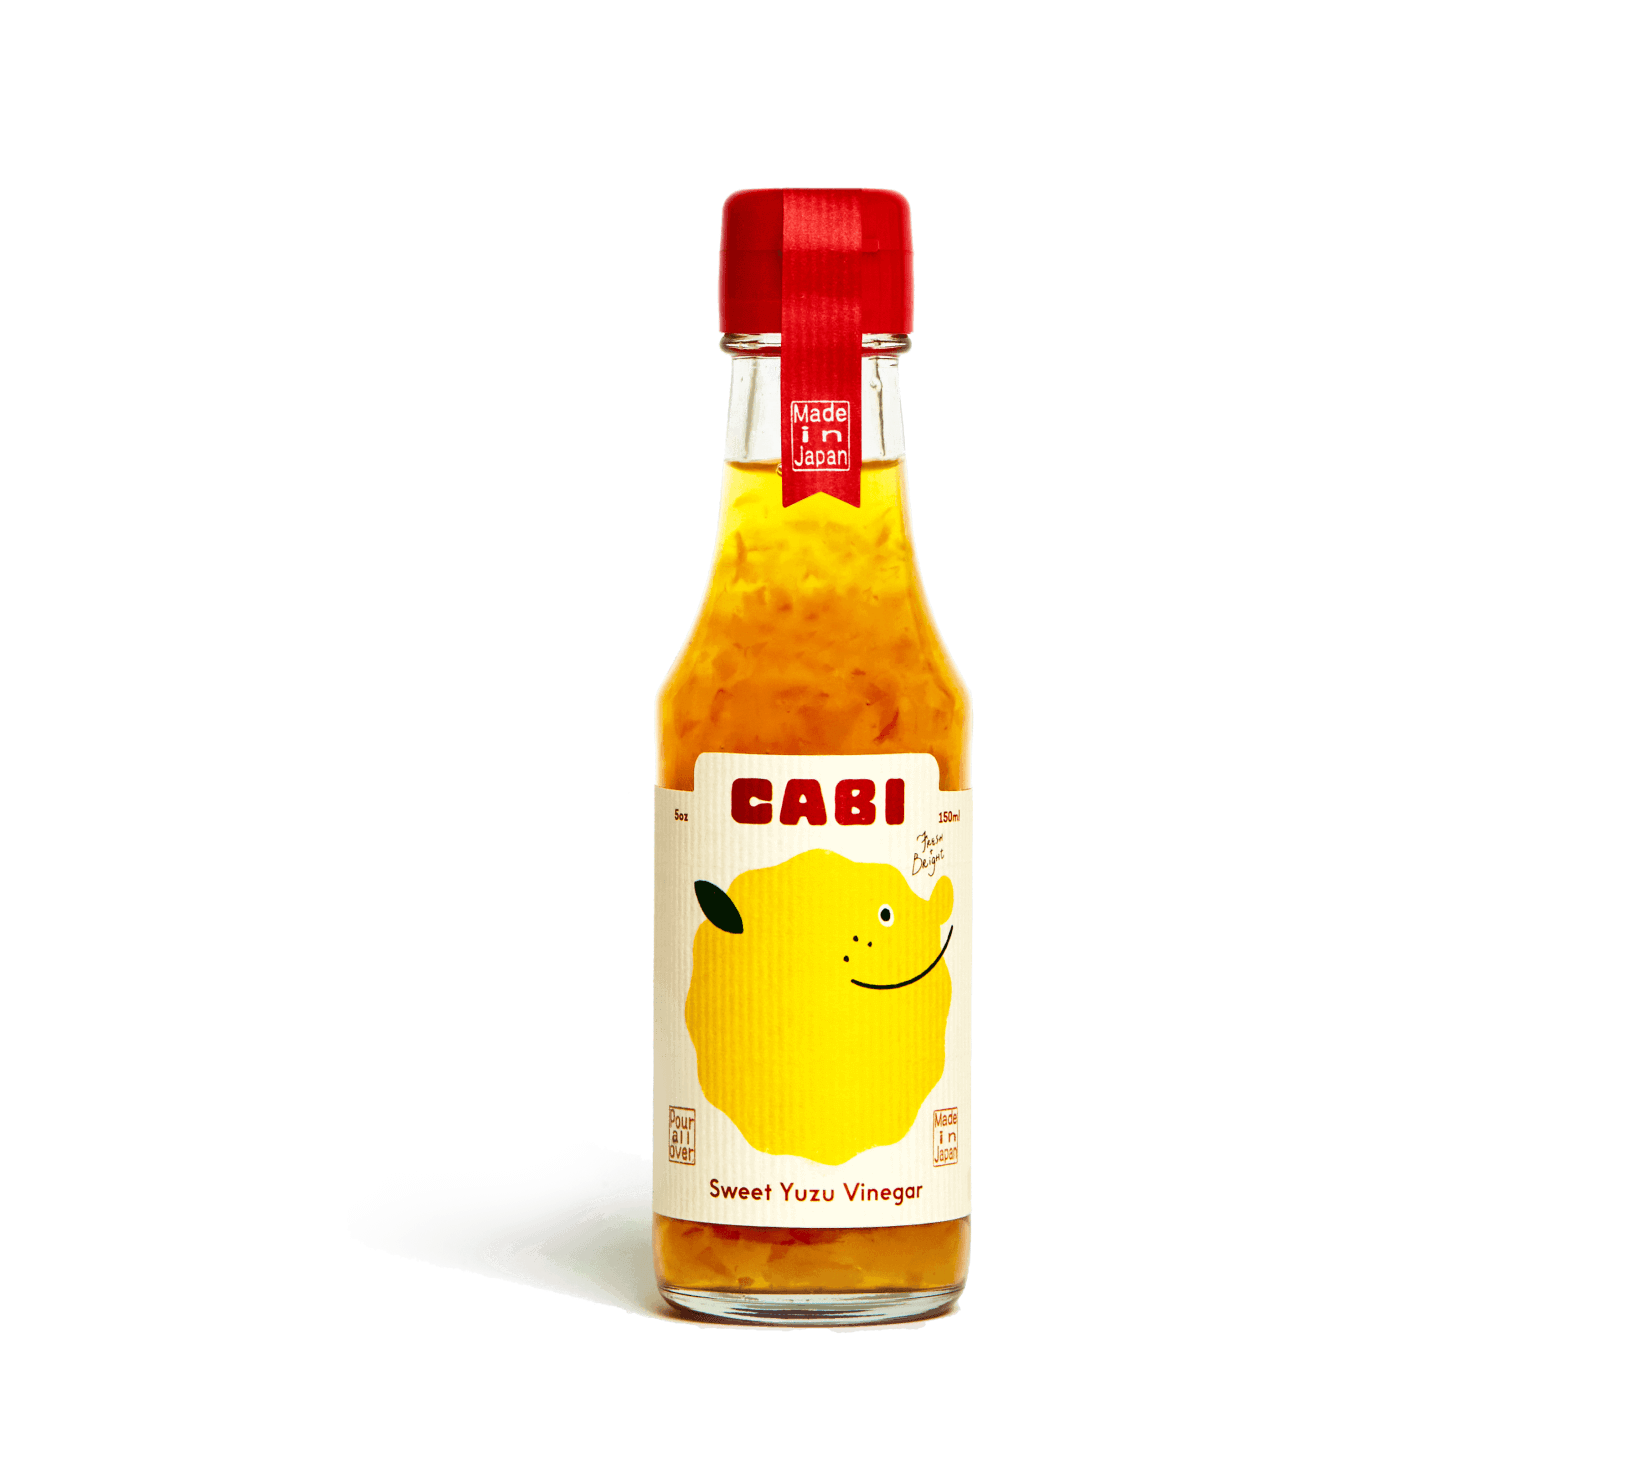 yuzu vinegar sauce by cabi